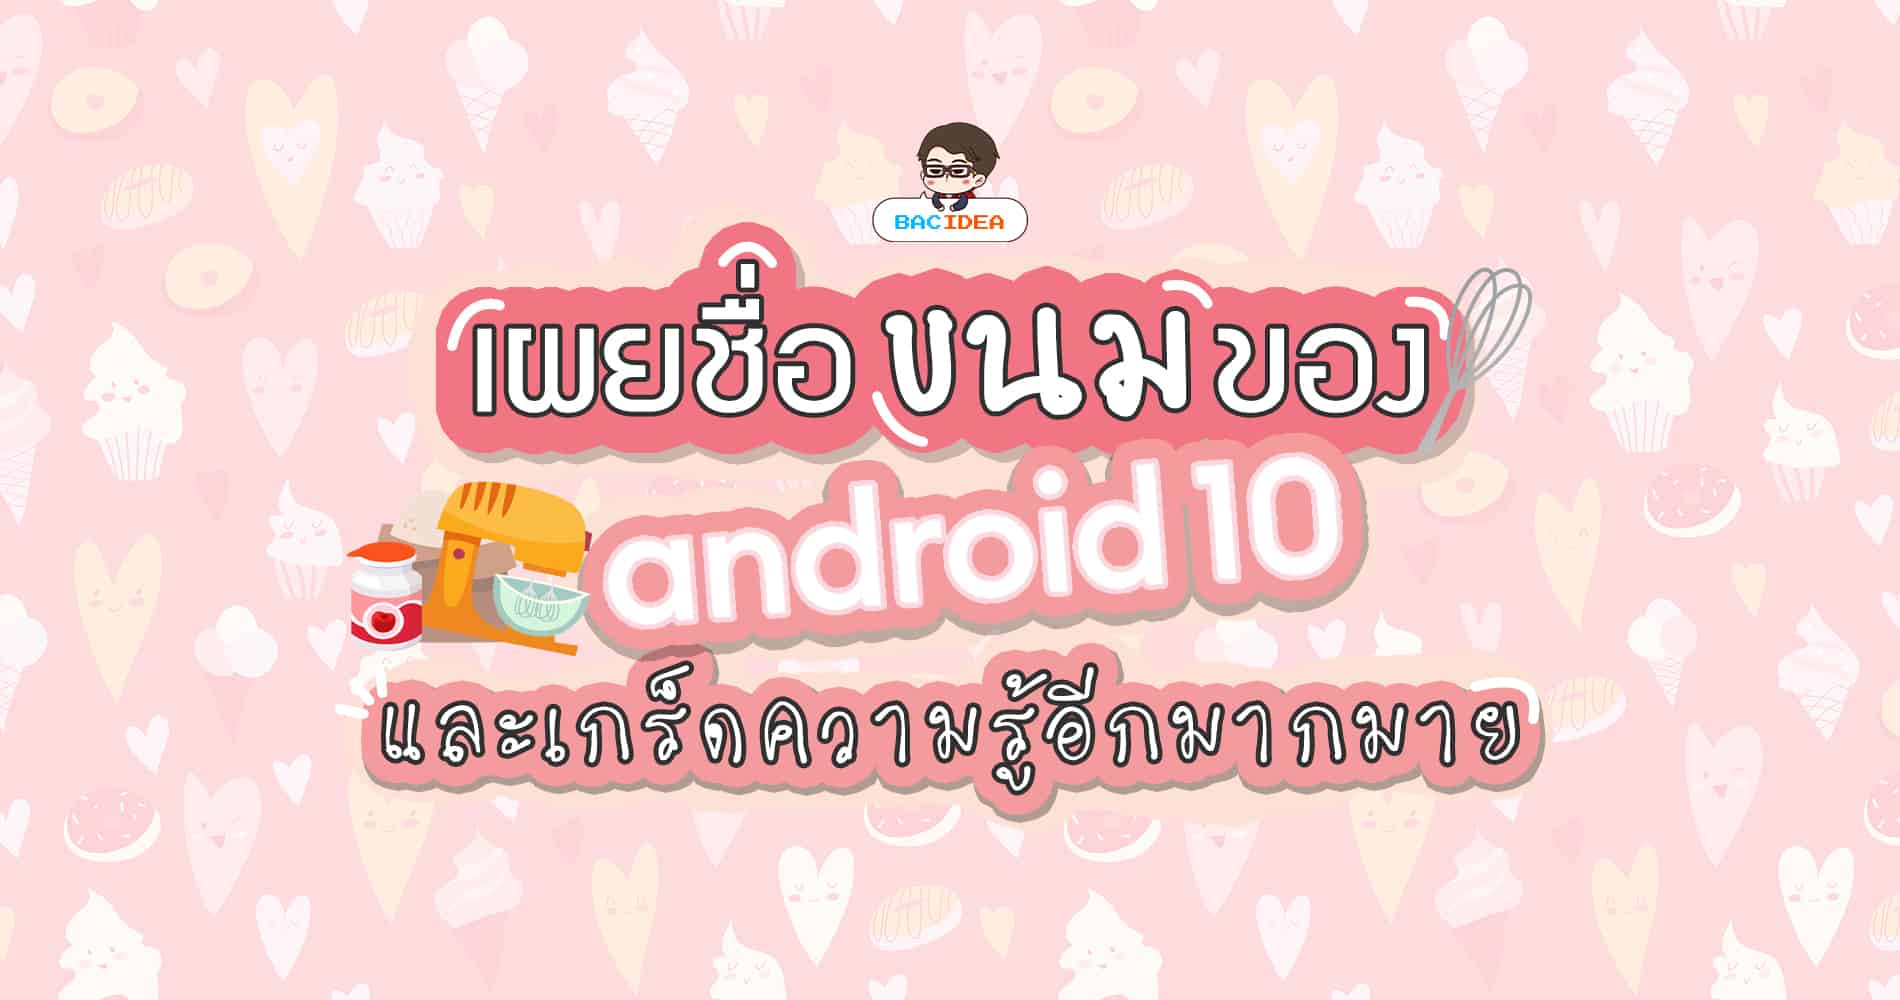 เบื้องหลัง Android 10 | เผยชื่อขนมของ Android Q และเกร็ดความรู้อีกมากมาย 1